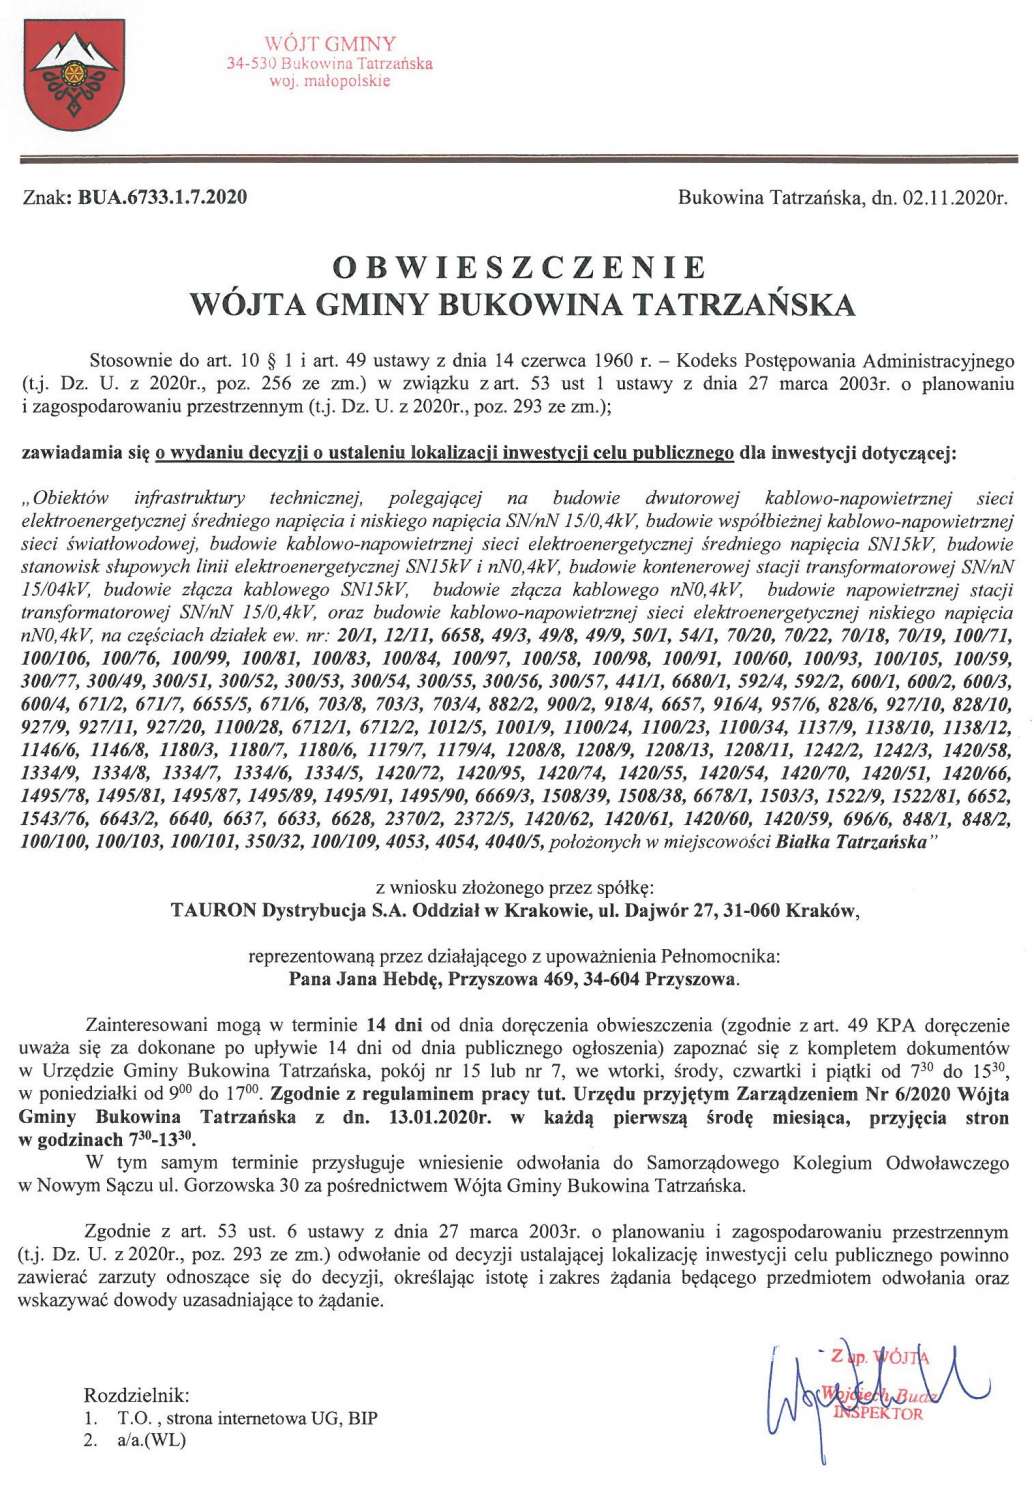 Obwieszczenie Wójta Gminy Bukowina Tatrzańska BUA 6733.1.7.2020